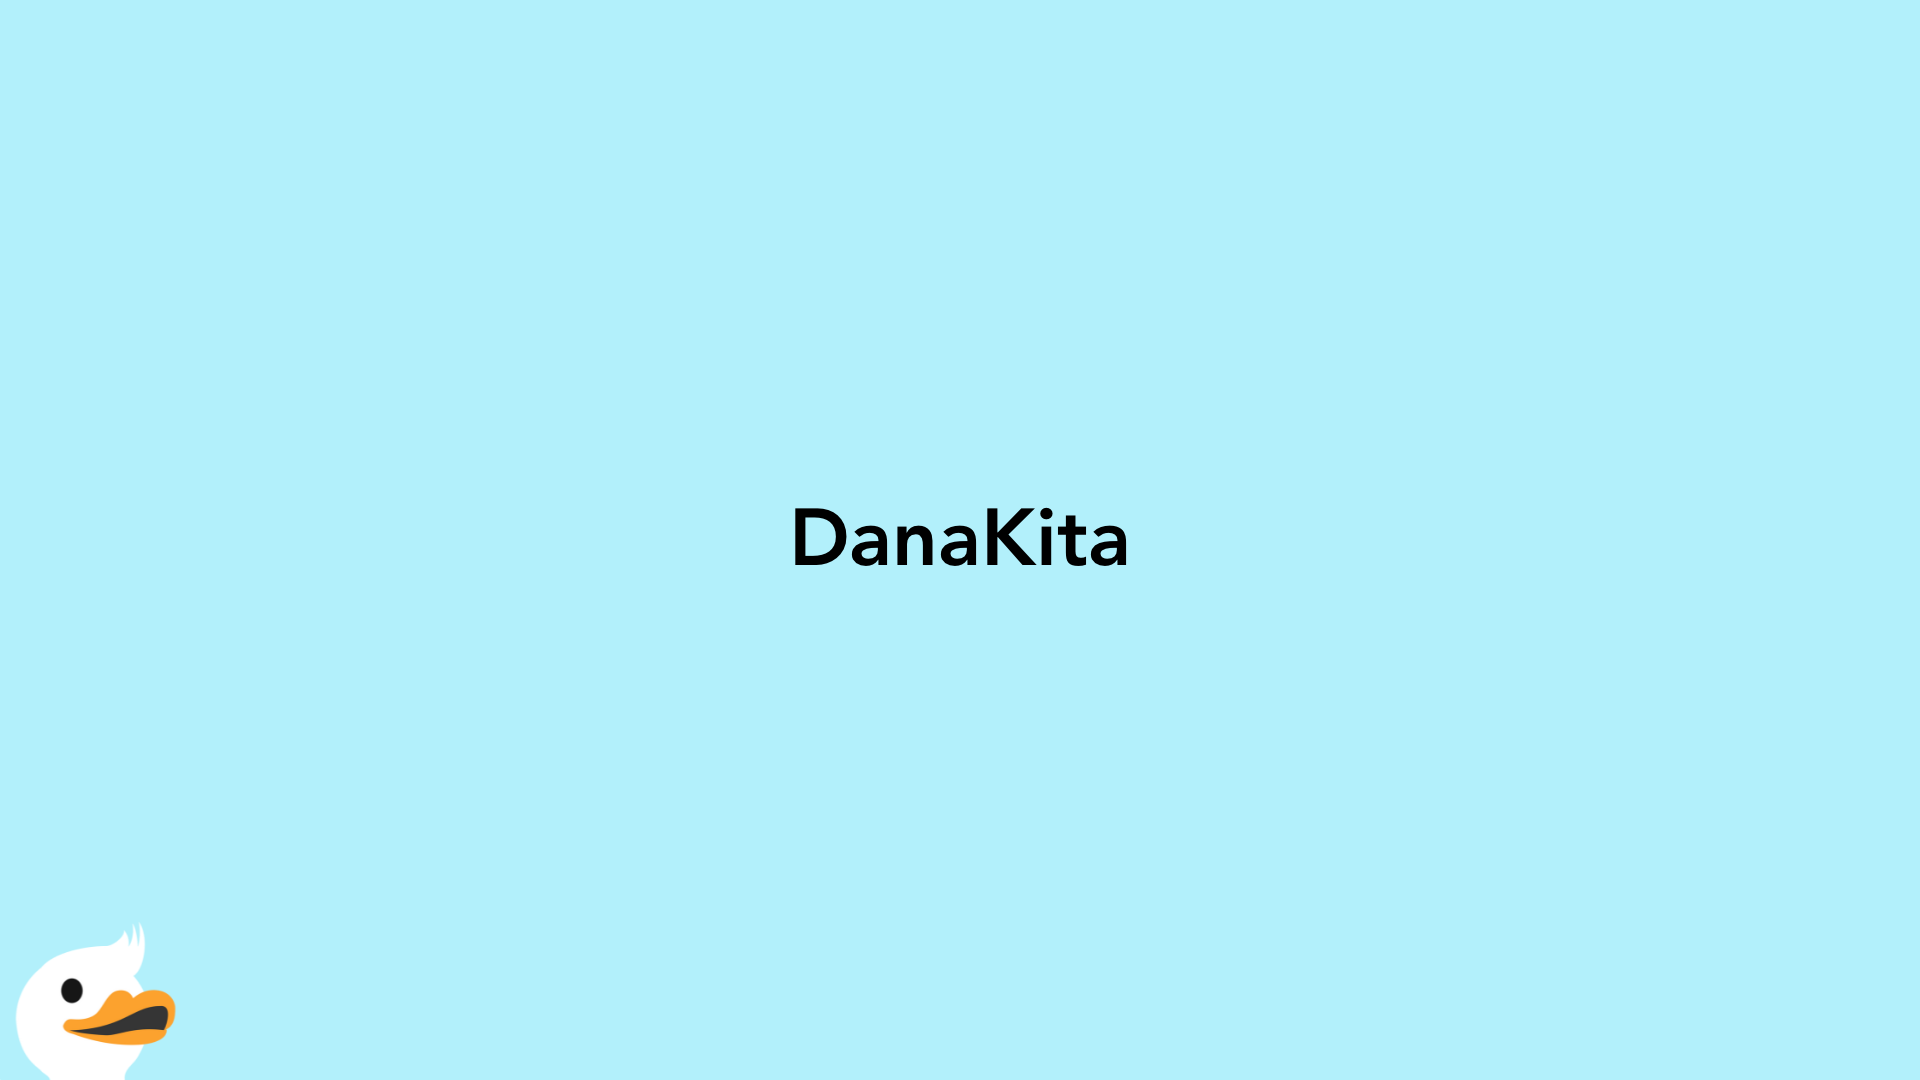 DanaKita